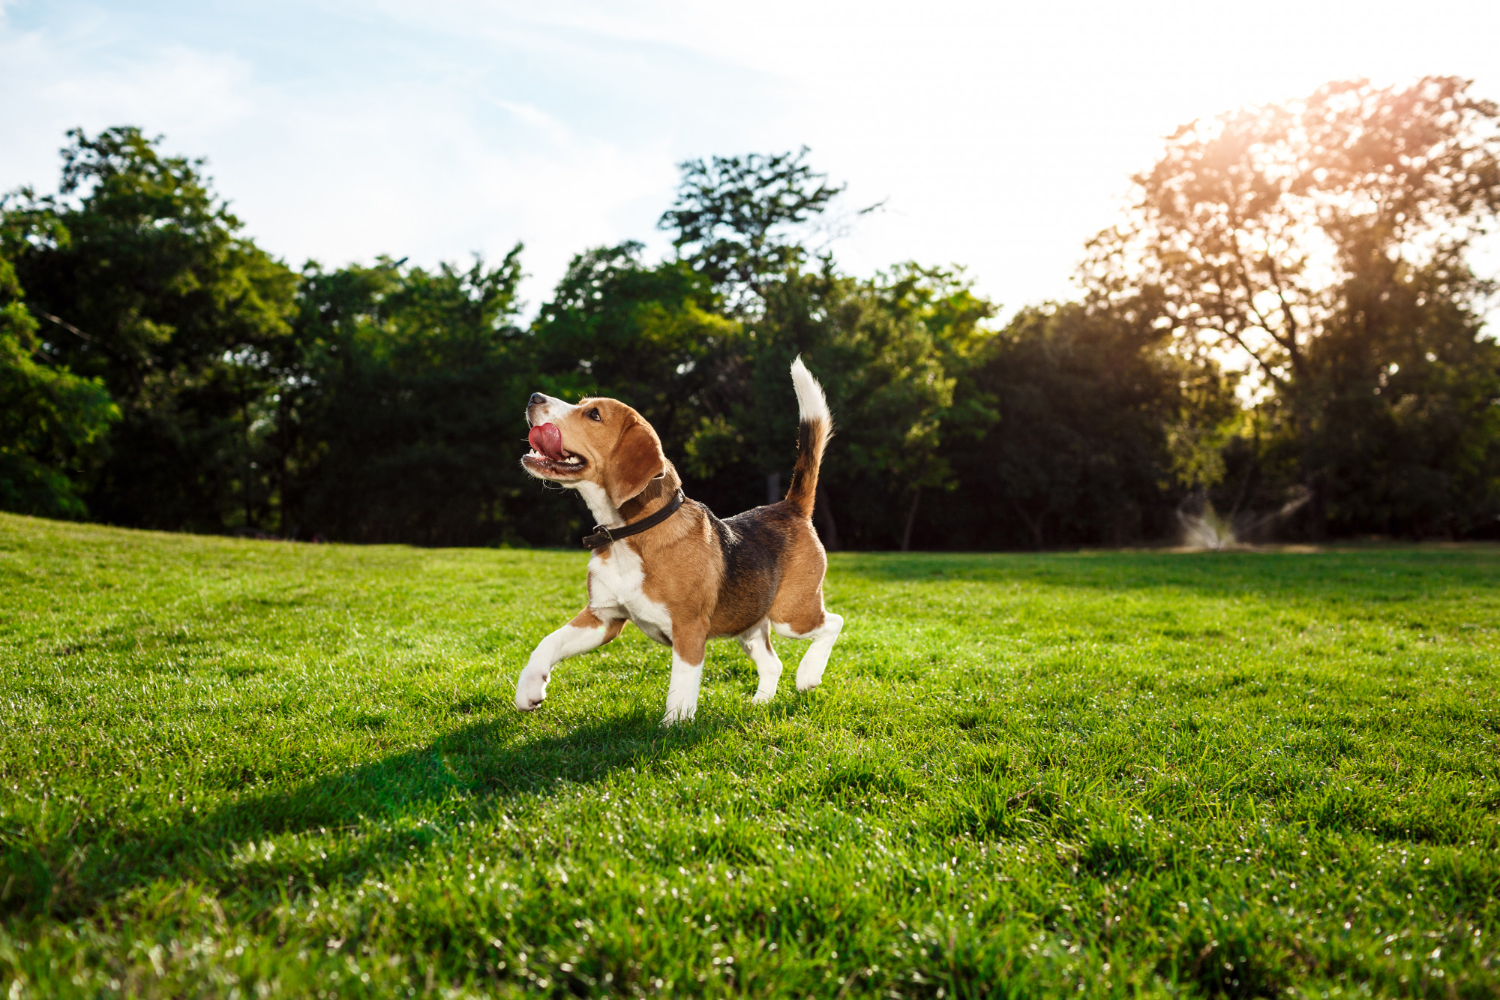 cao-engracado-engracado-beagle-andando-brincando-no-parque